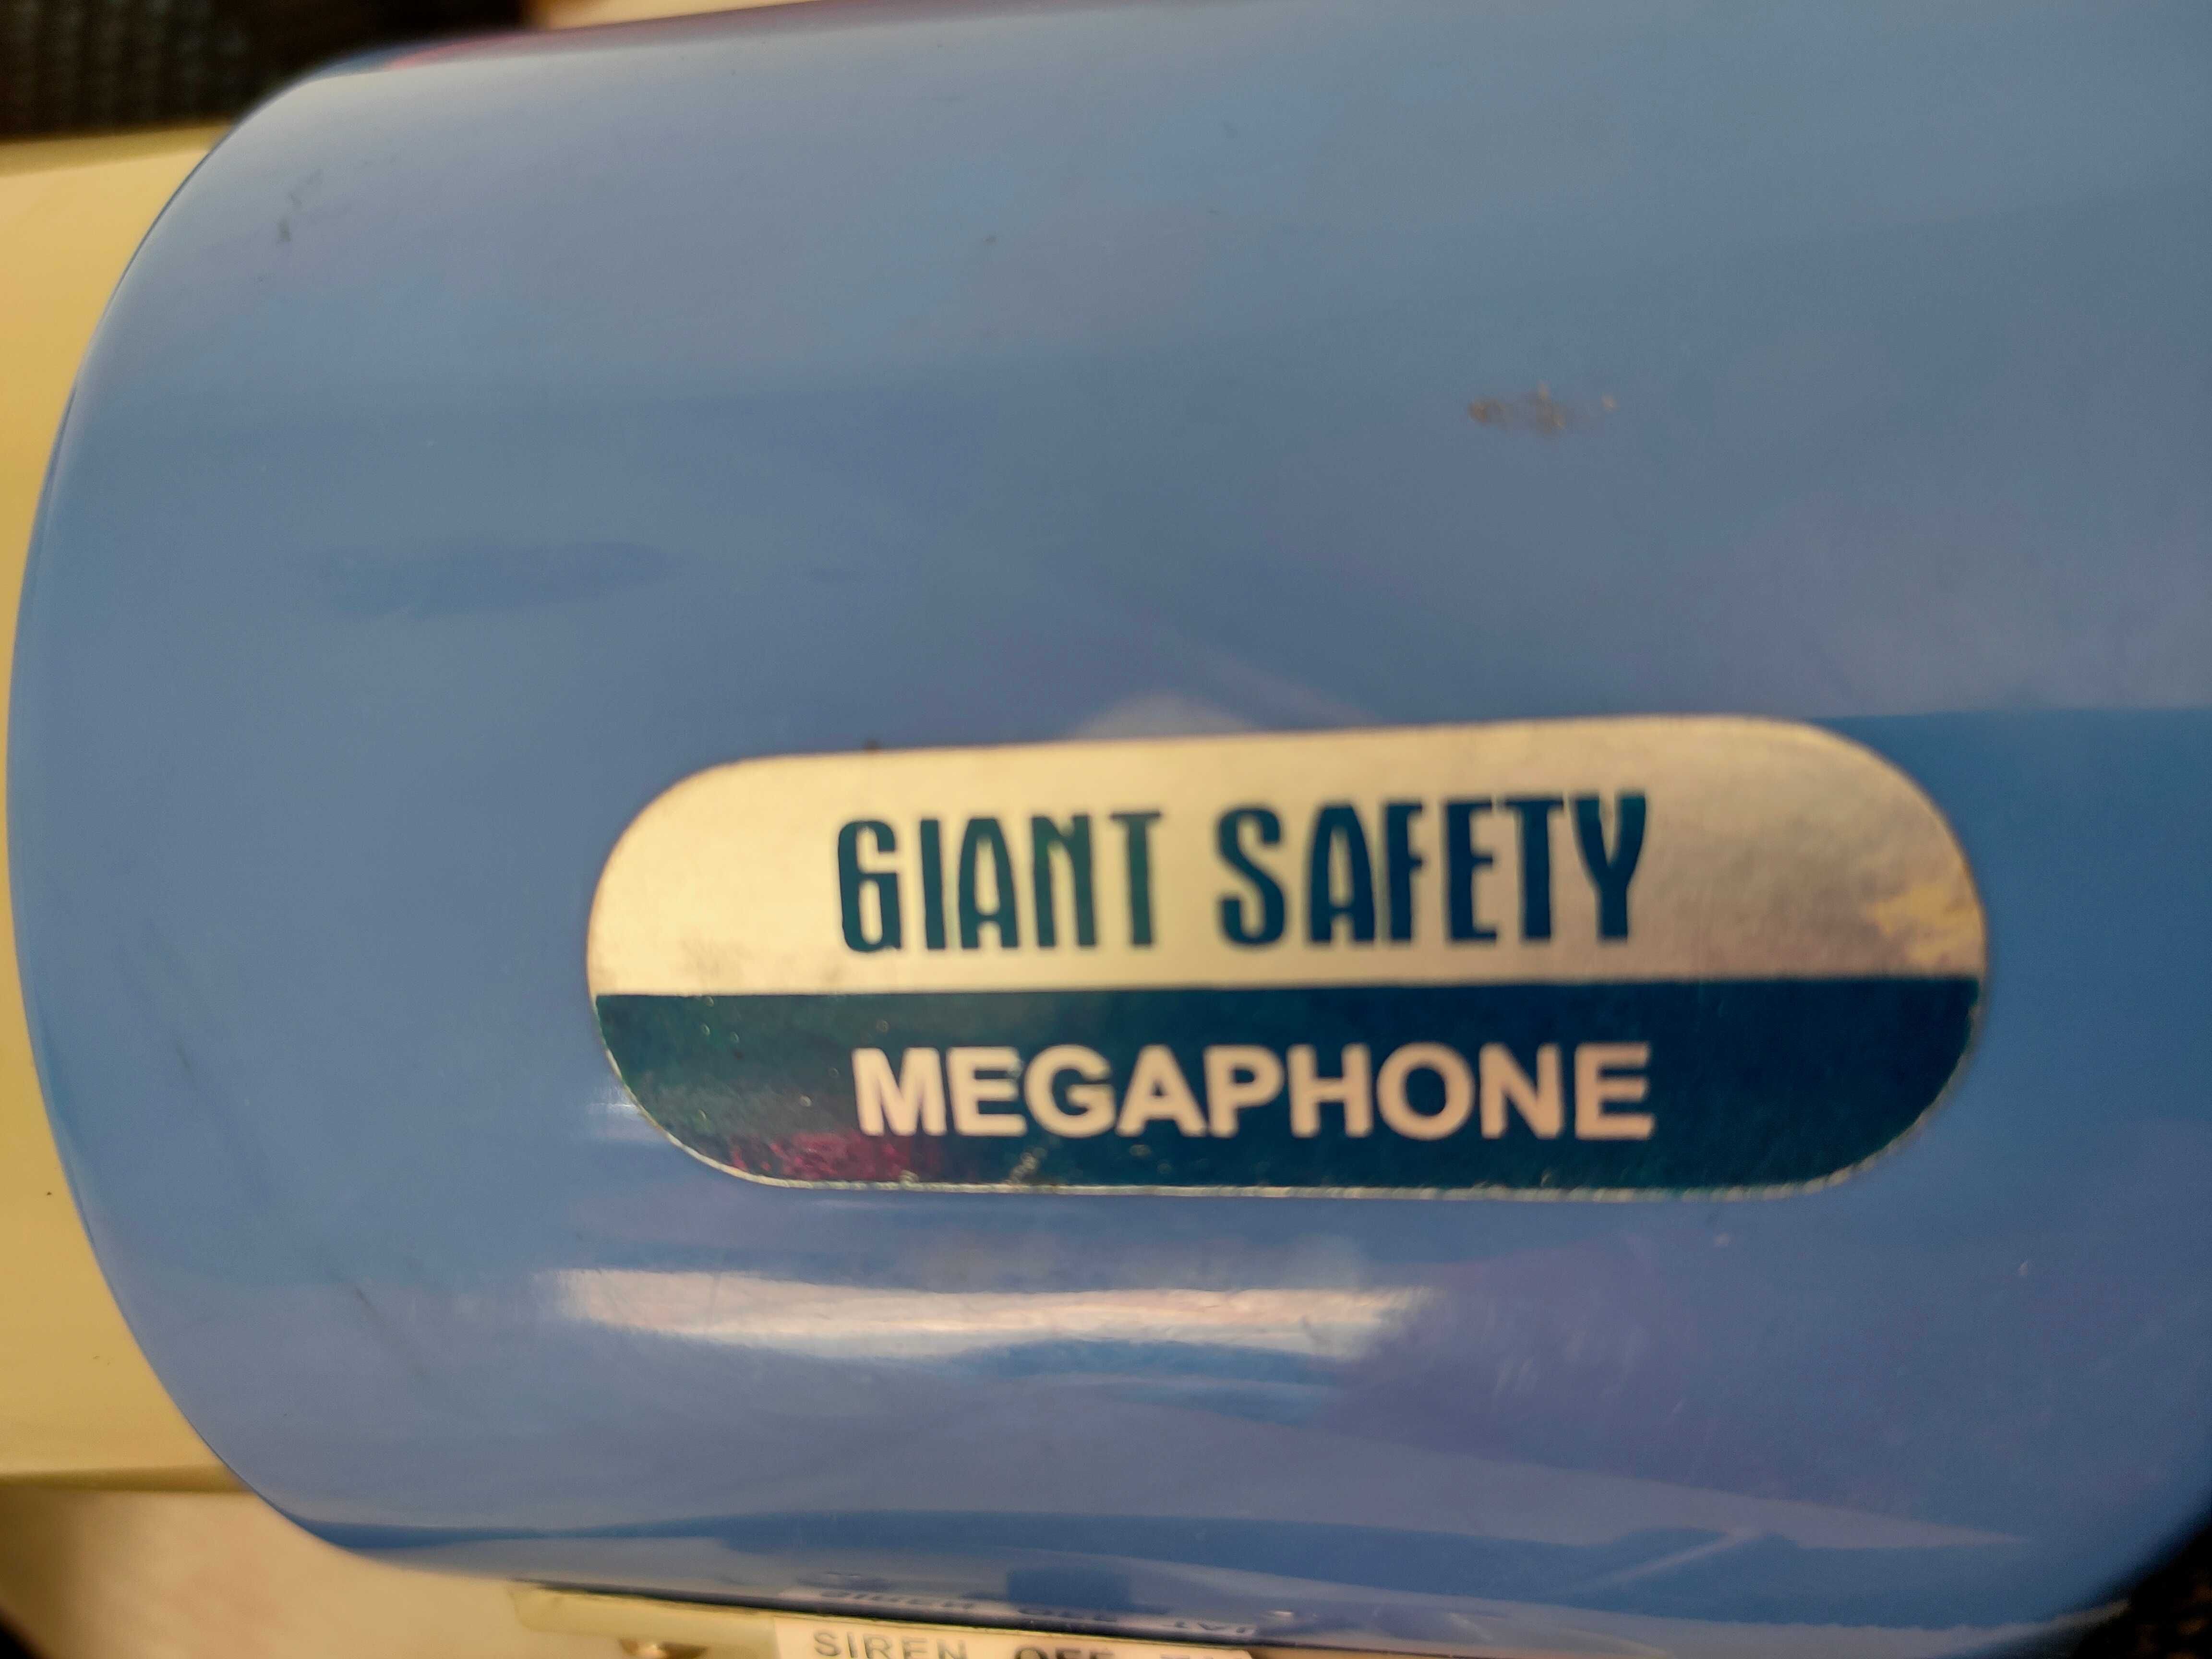 Мегафон GIANT SAFETY  50 W , производитель Израиль – высылаю